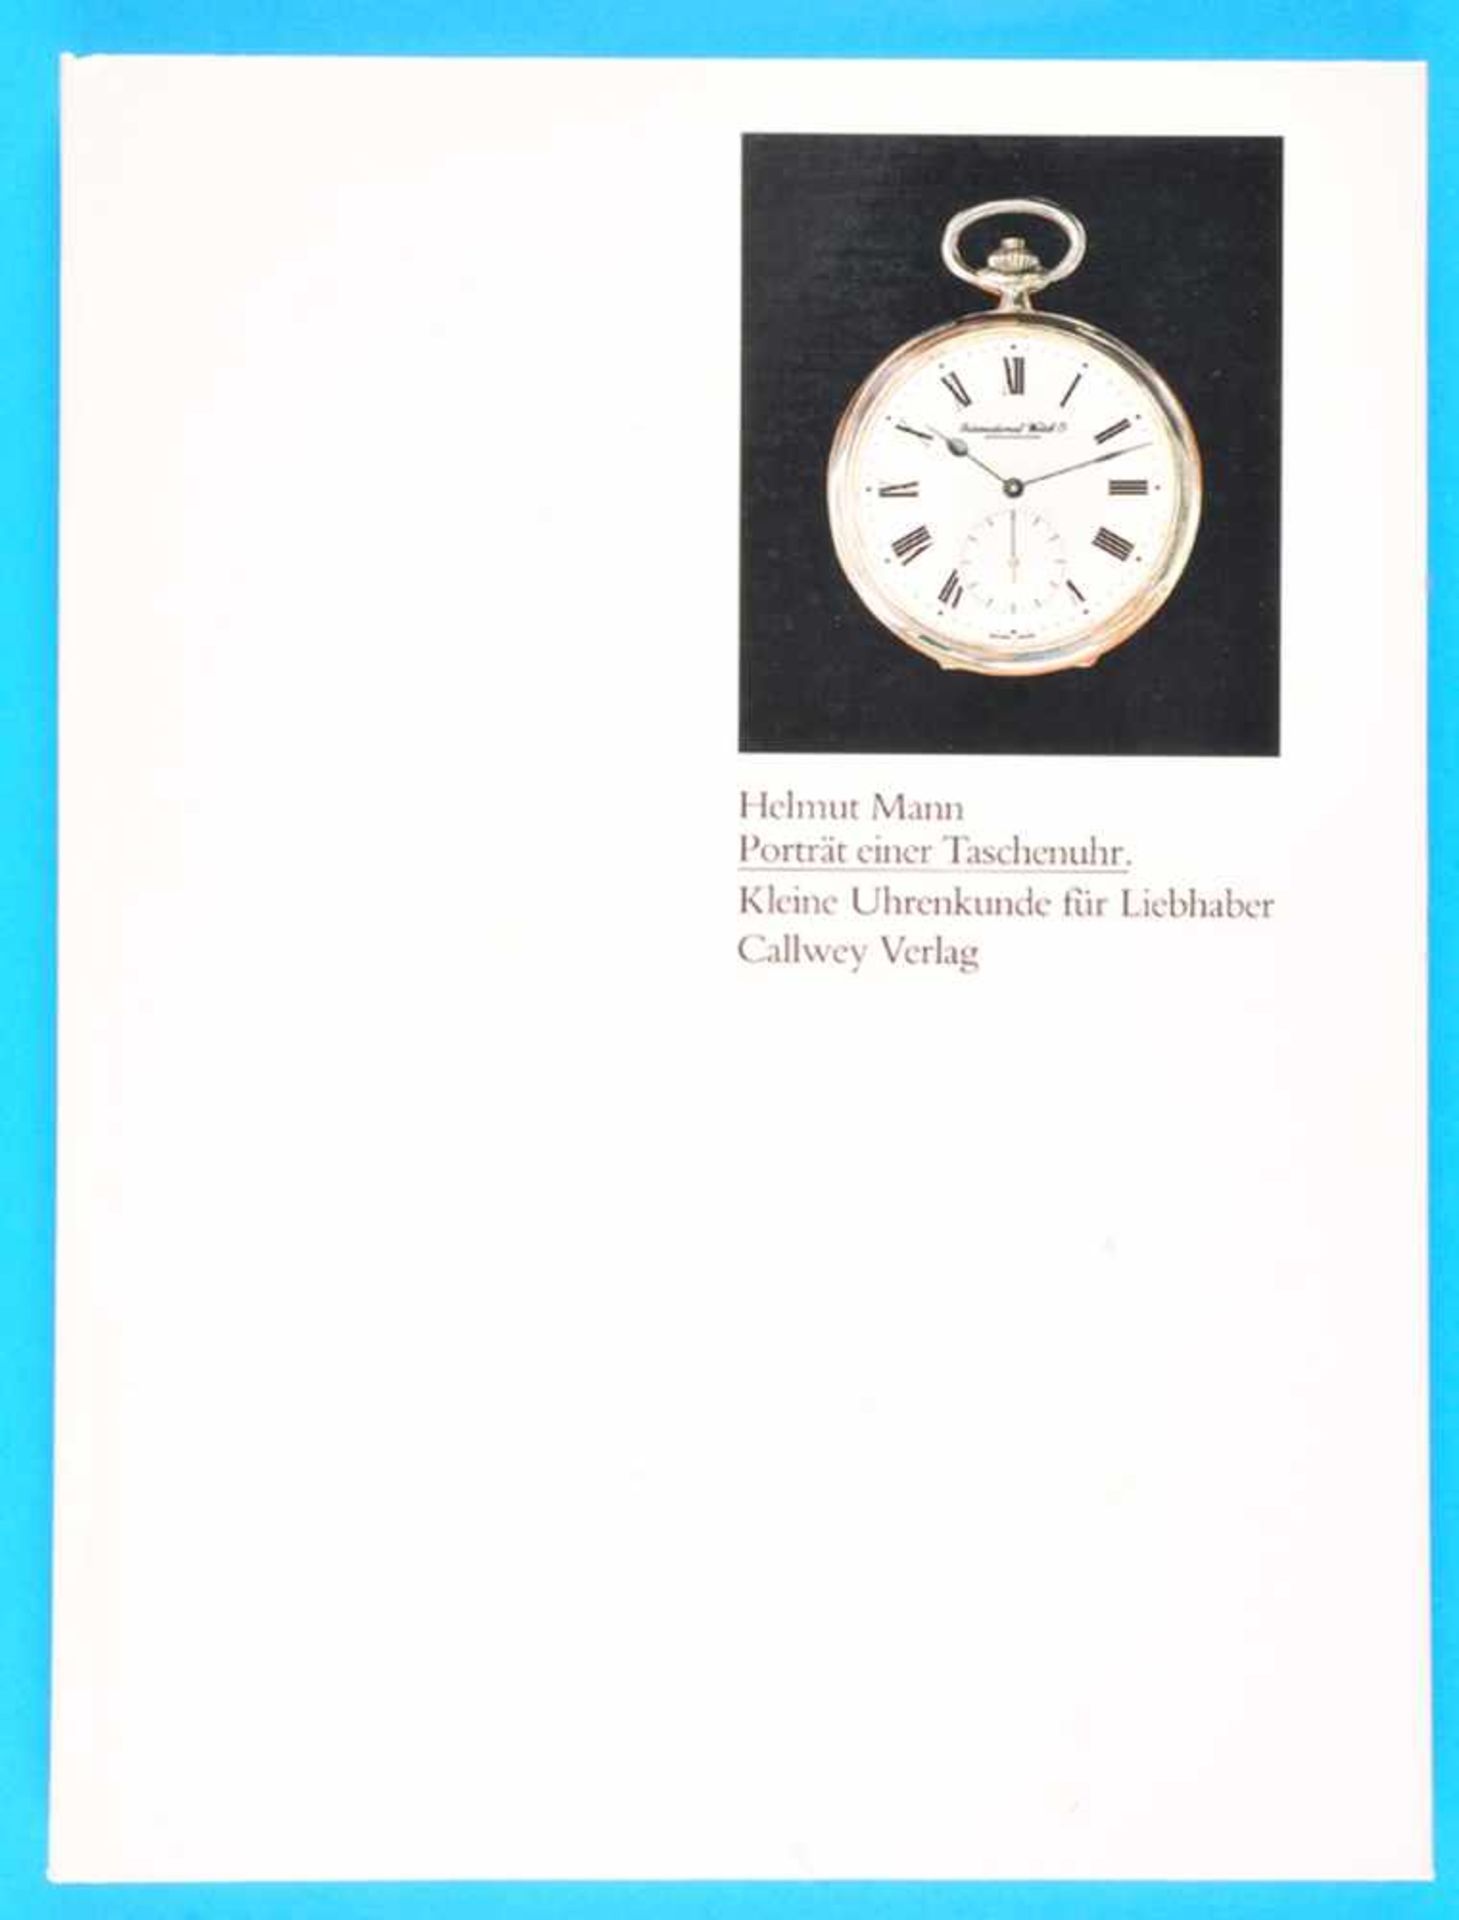 Helmut Mann, Portrait einer Taschenuhr - IWC - Kleine Uhrenkunde für LiebhaberHelmut Mann,